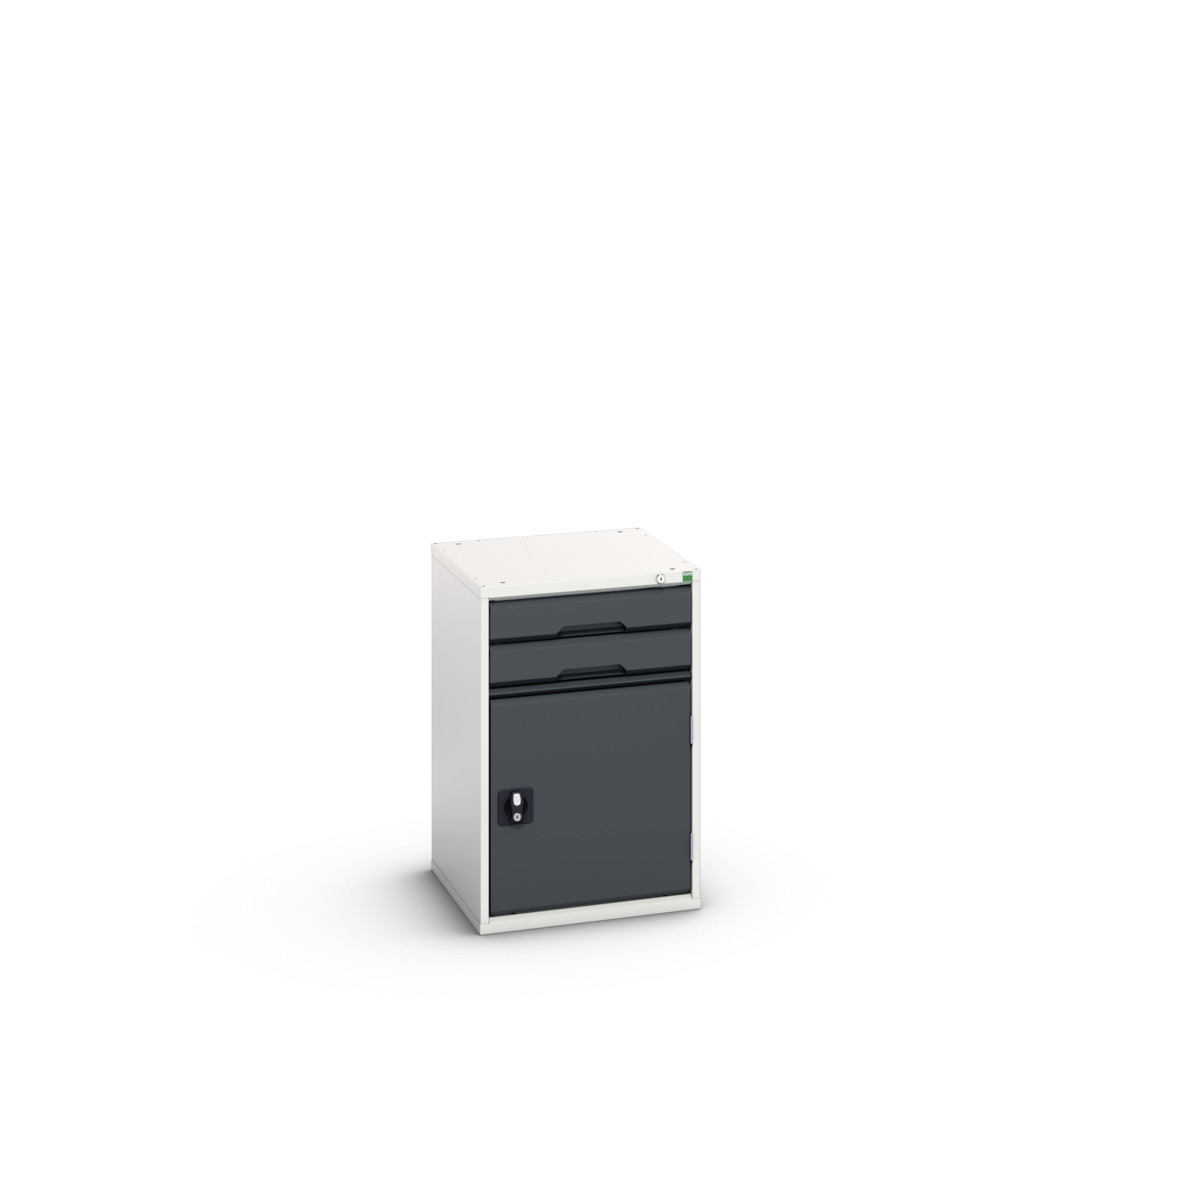 16925016.19 - verso drawer-door cabinet